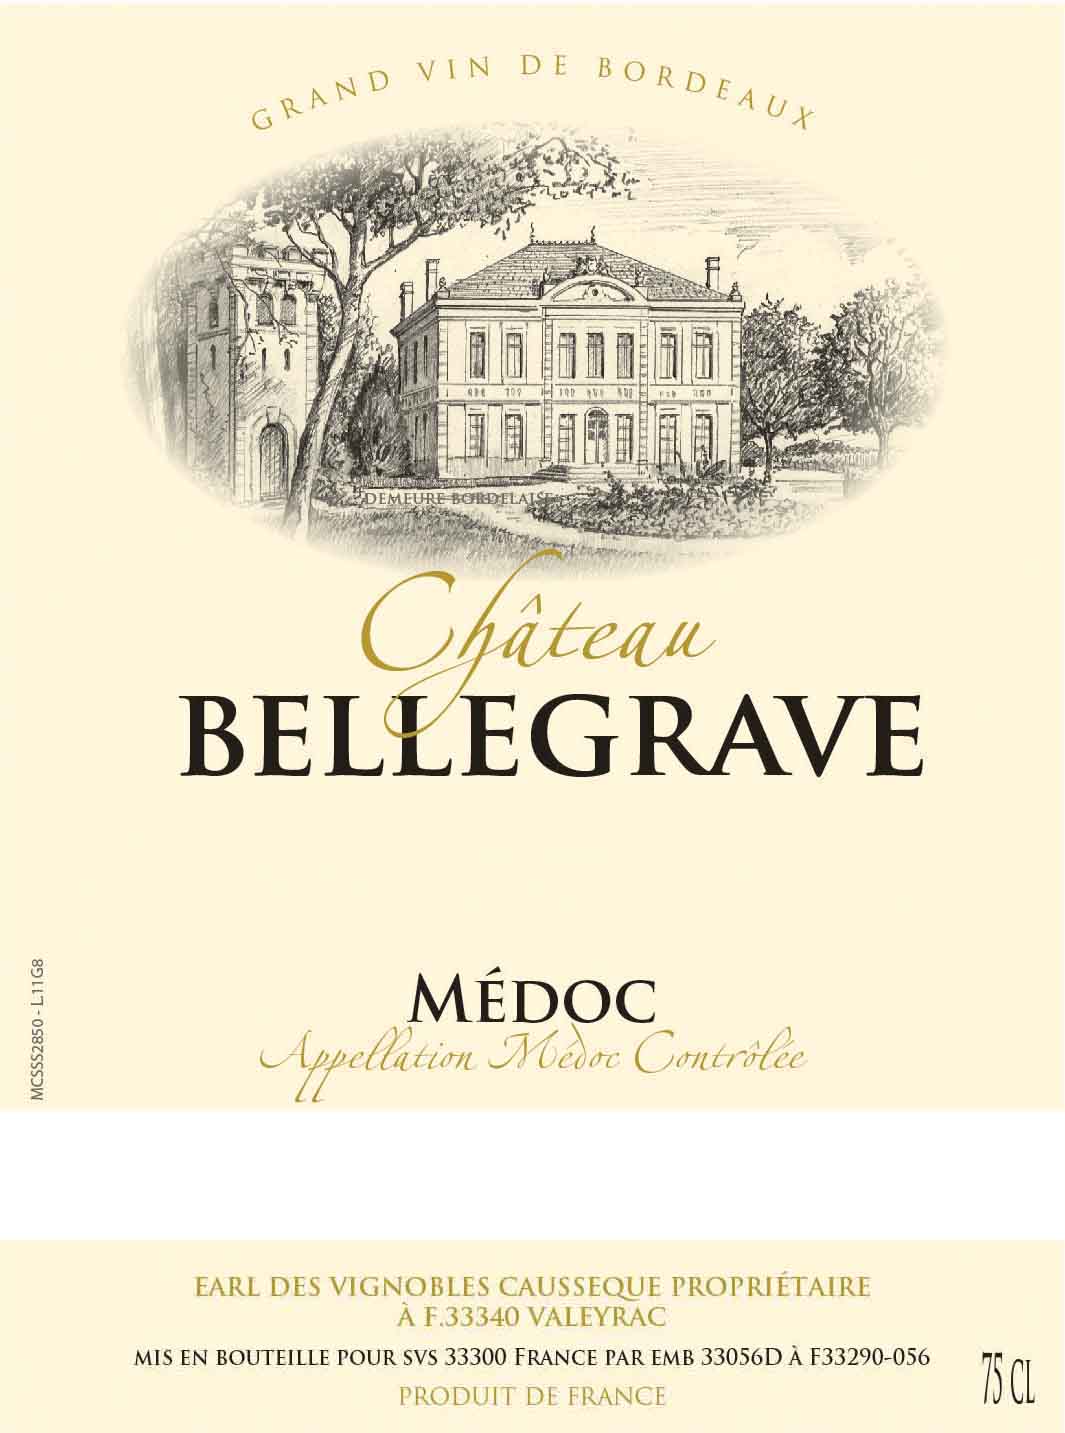 Chateau Bellegrave label